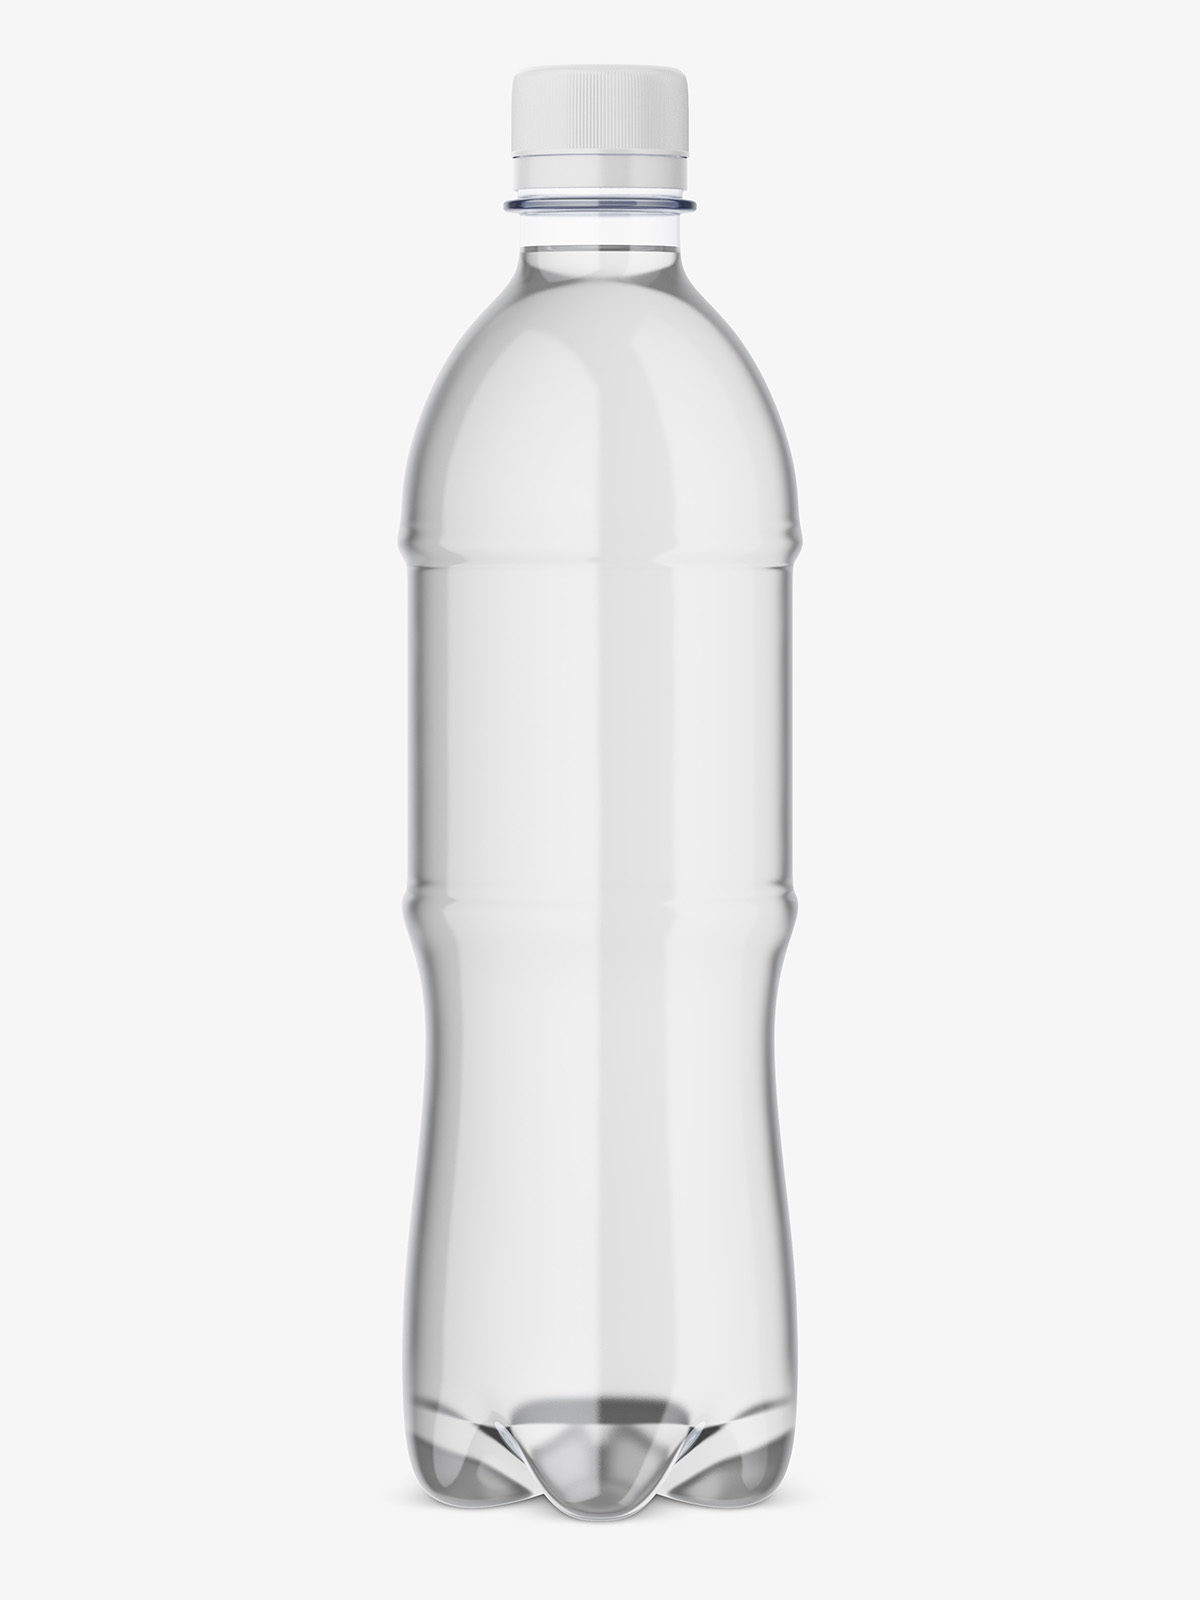 Mineral water bottle mockup - Smarty Mockups